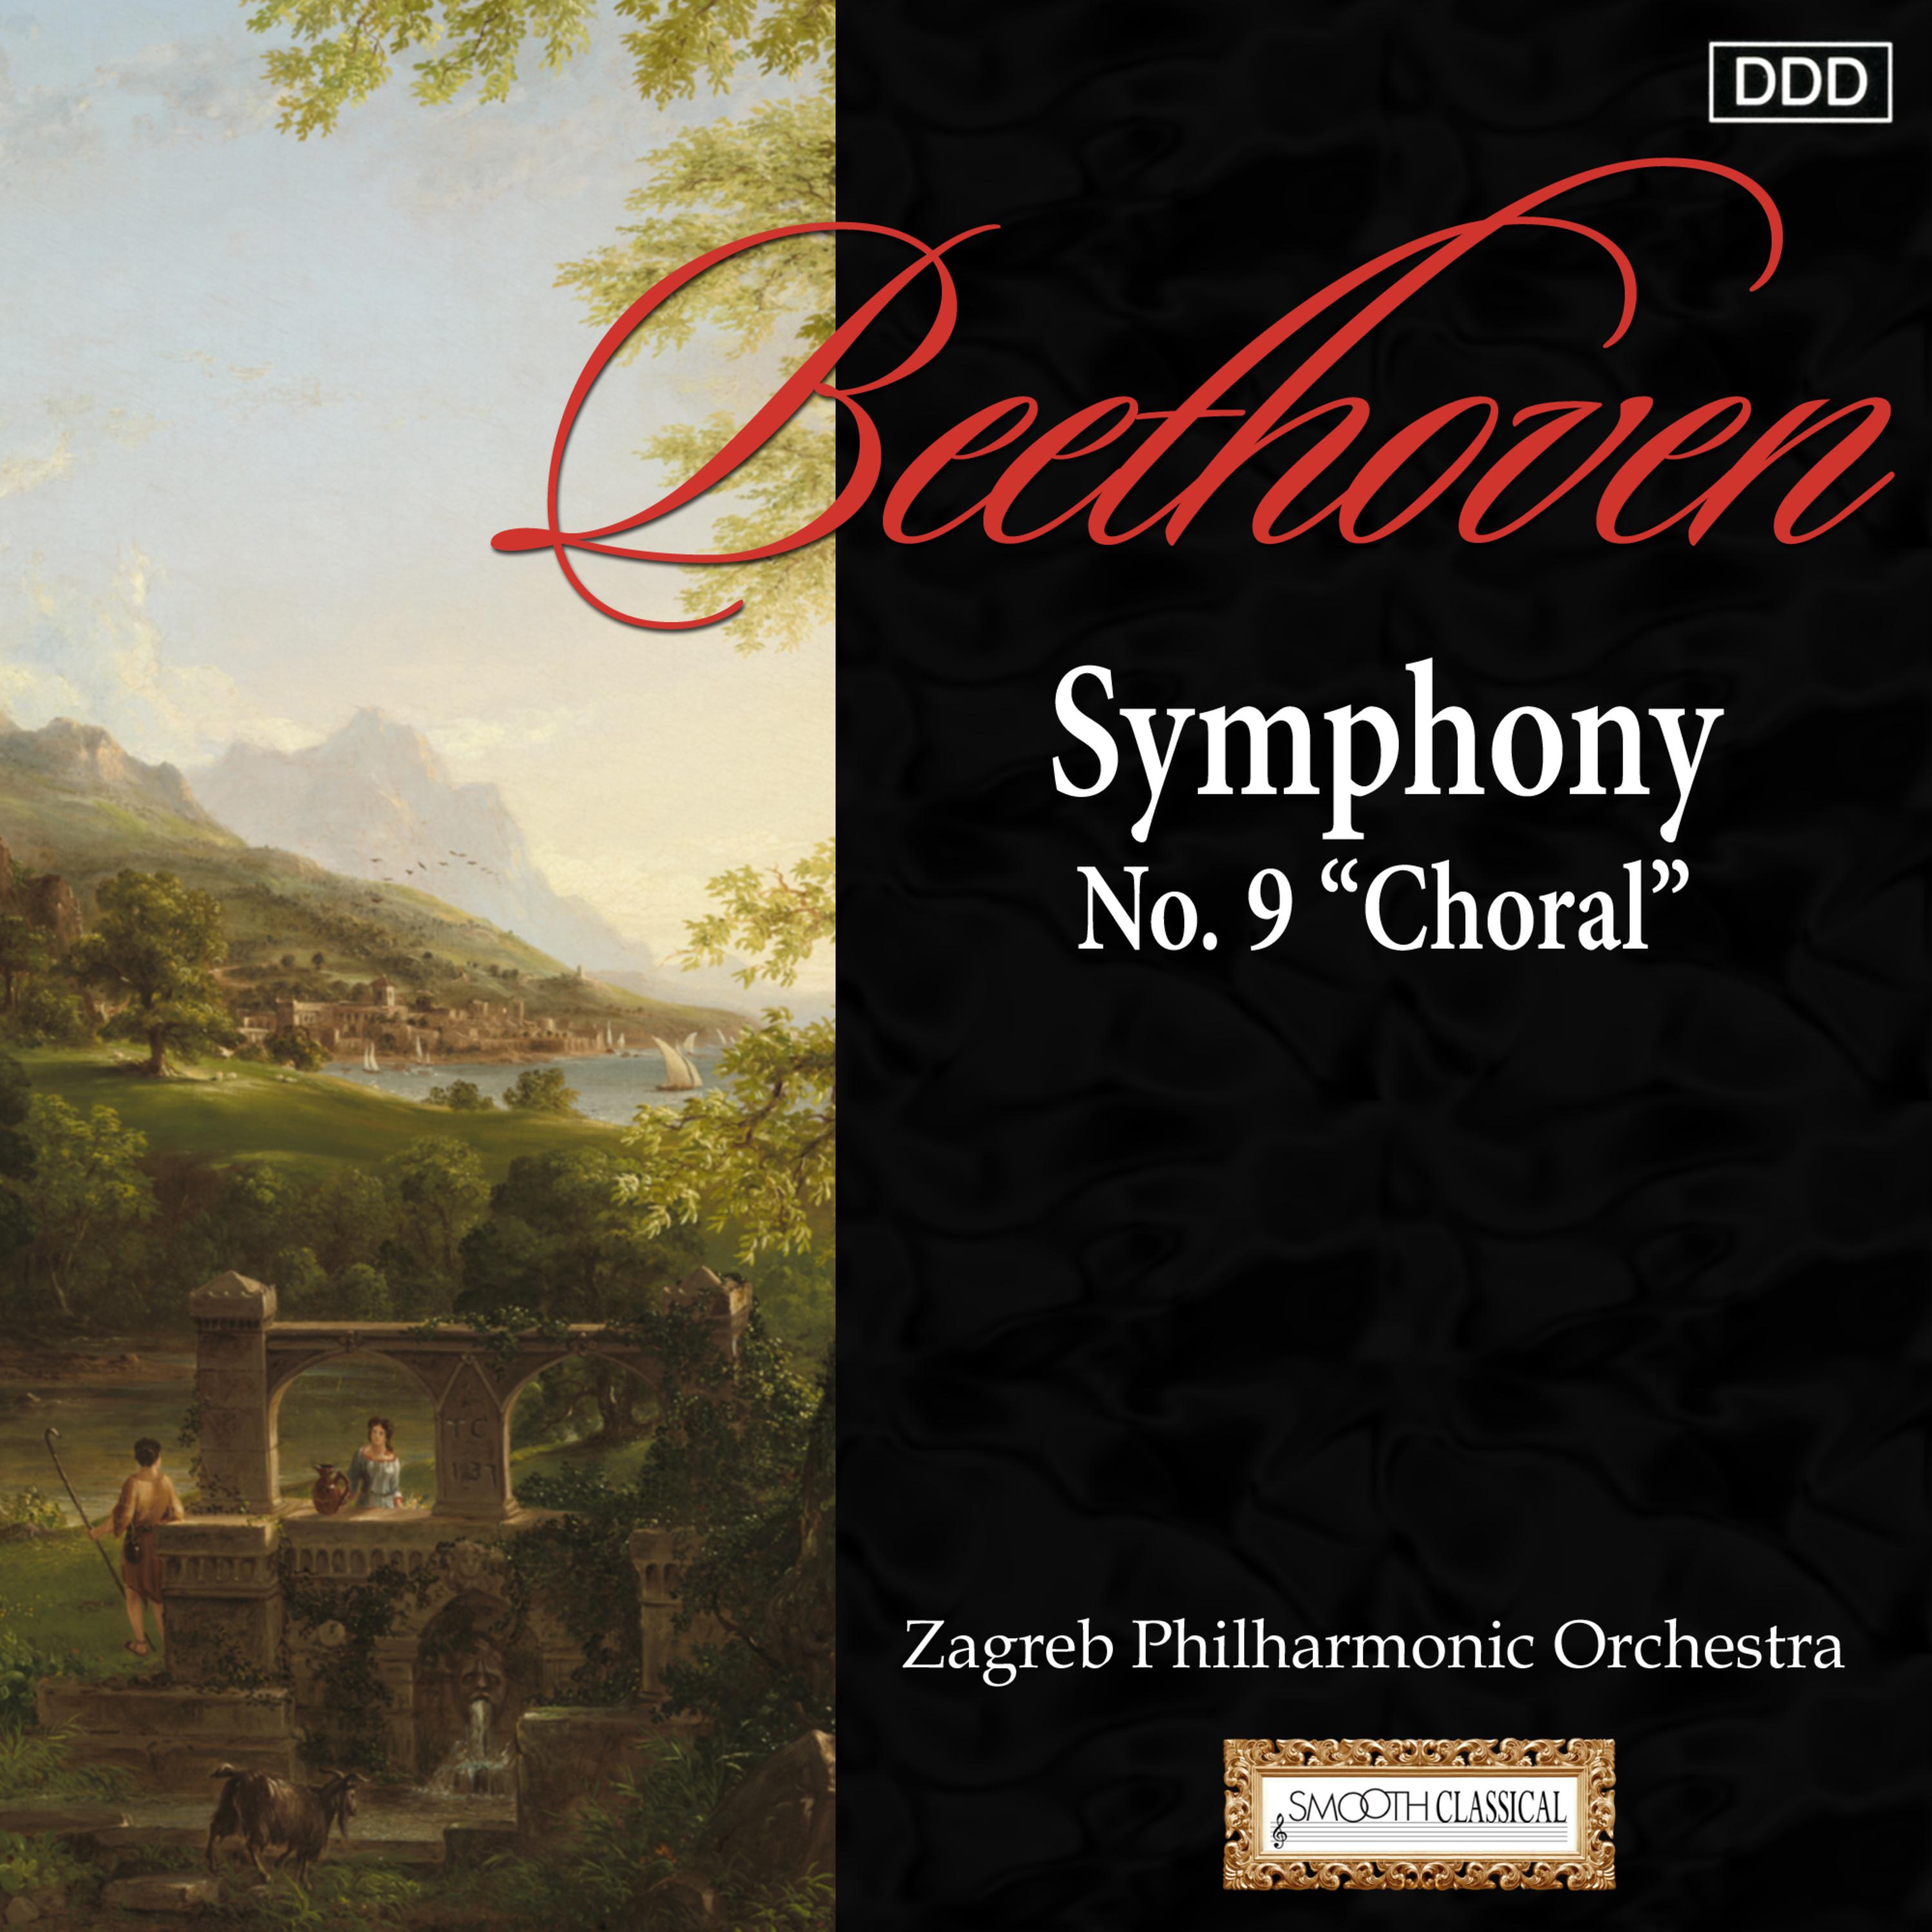 Symphony No. 9 in D Minor, Op. 125 "Choral": I. Allegro ma non troppo, unn poco maestoso